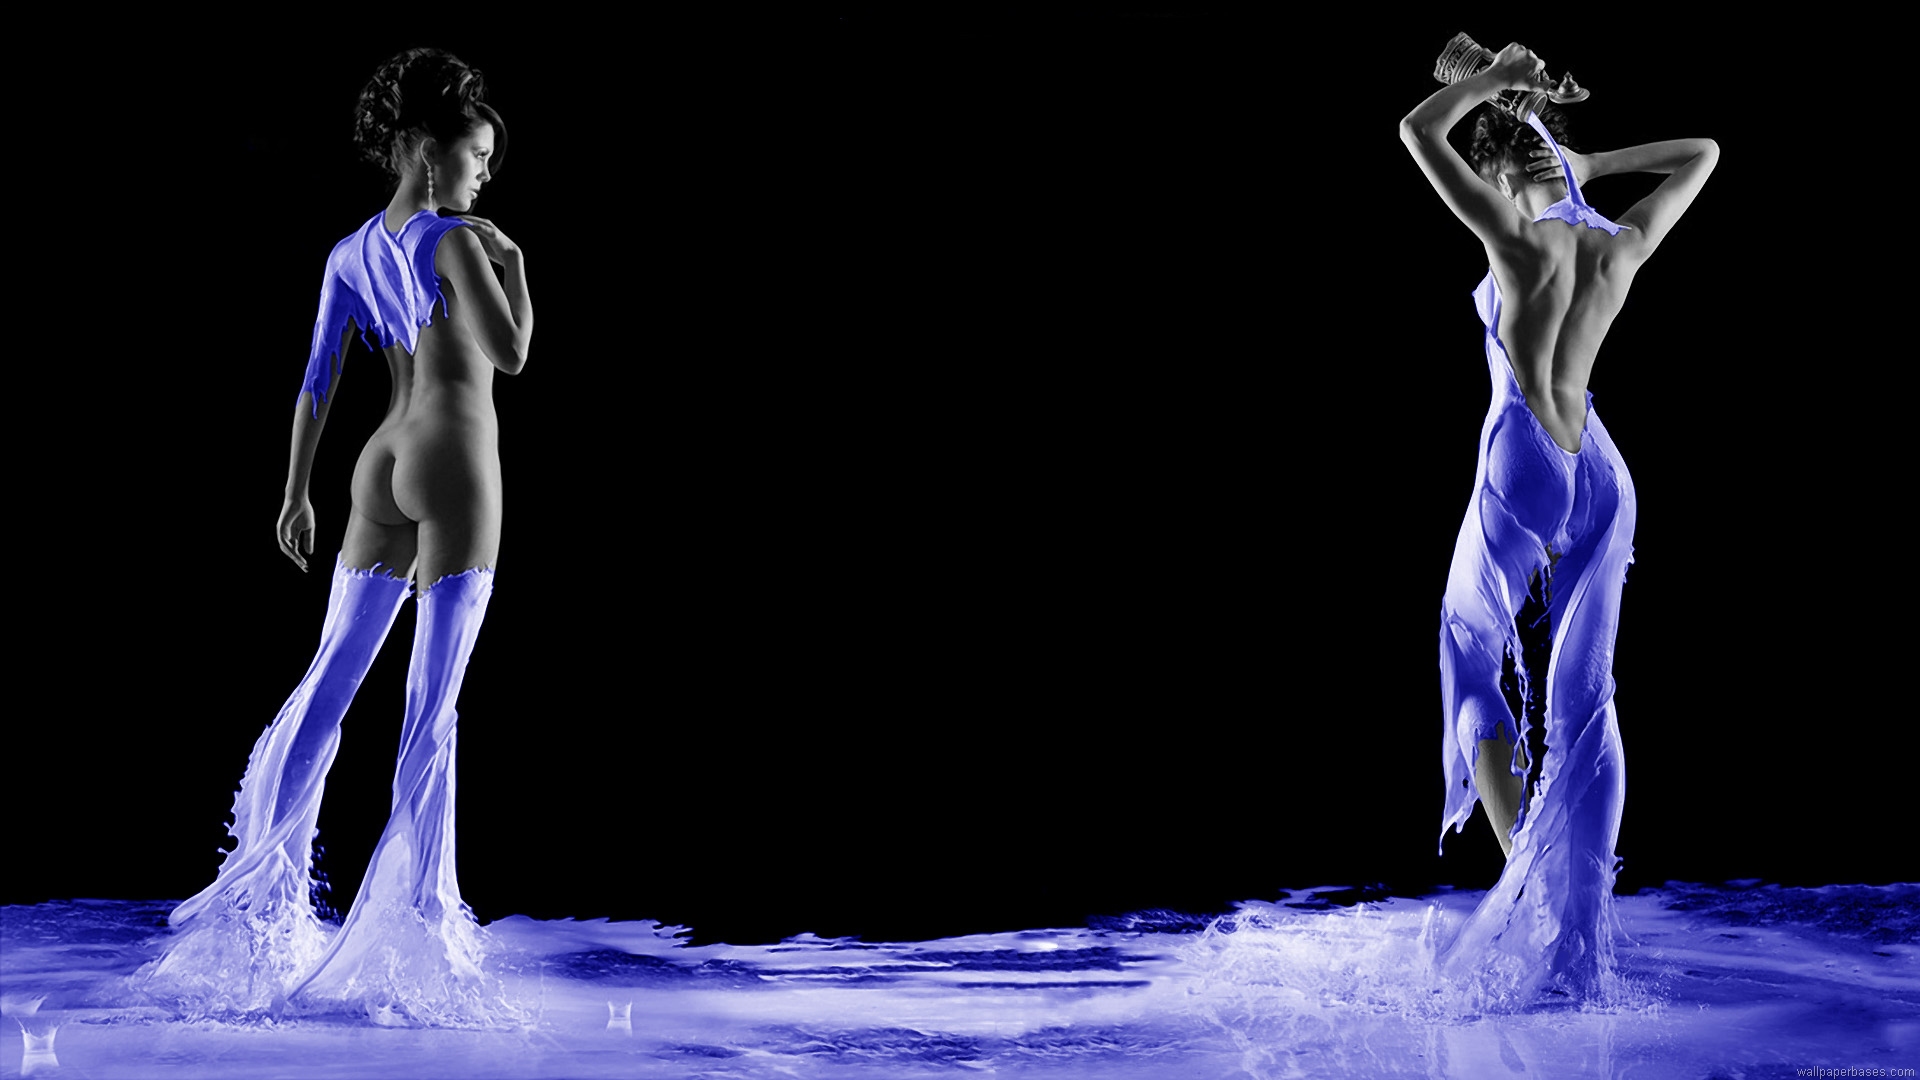 1080 x 1920 píxeles fondos de pantalla hd,agua,bailarín,danza moderna,actuación,humano